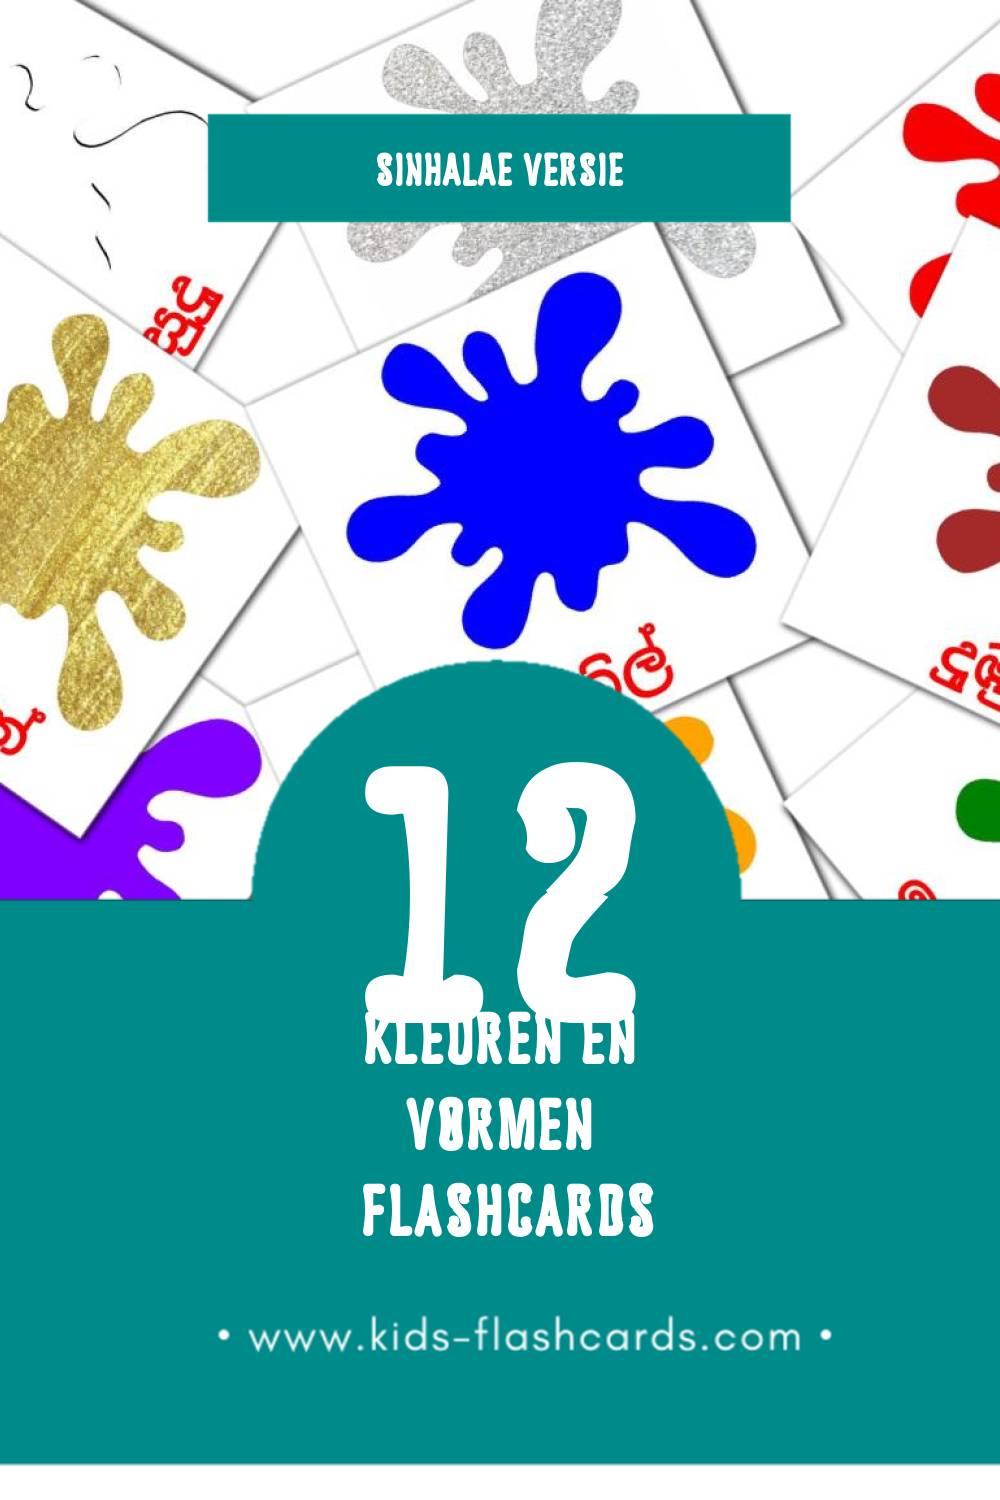 Visuele හැඩය සහ වර්ණය Flashcards voor Kleuters (12 kaarten in het Sinhala)